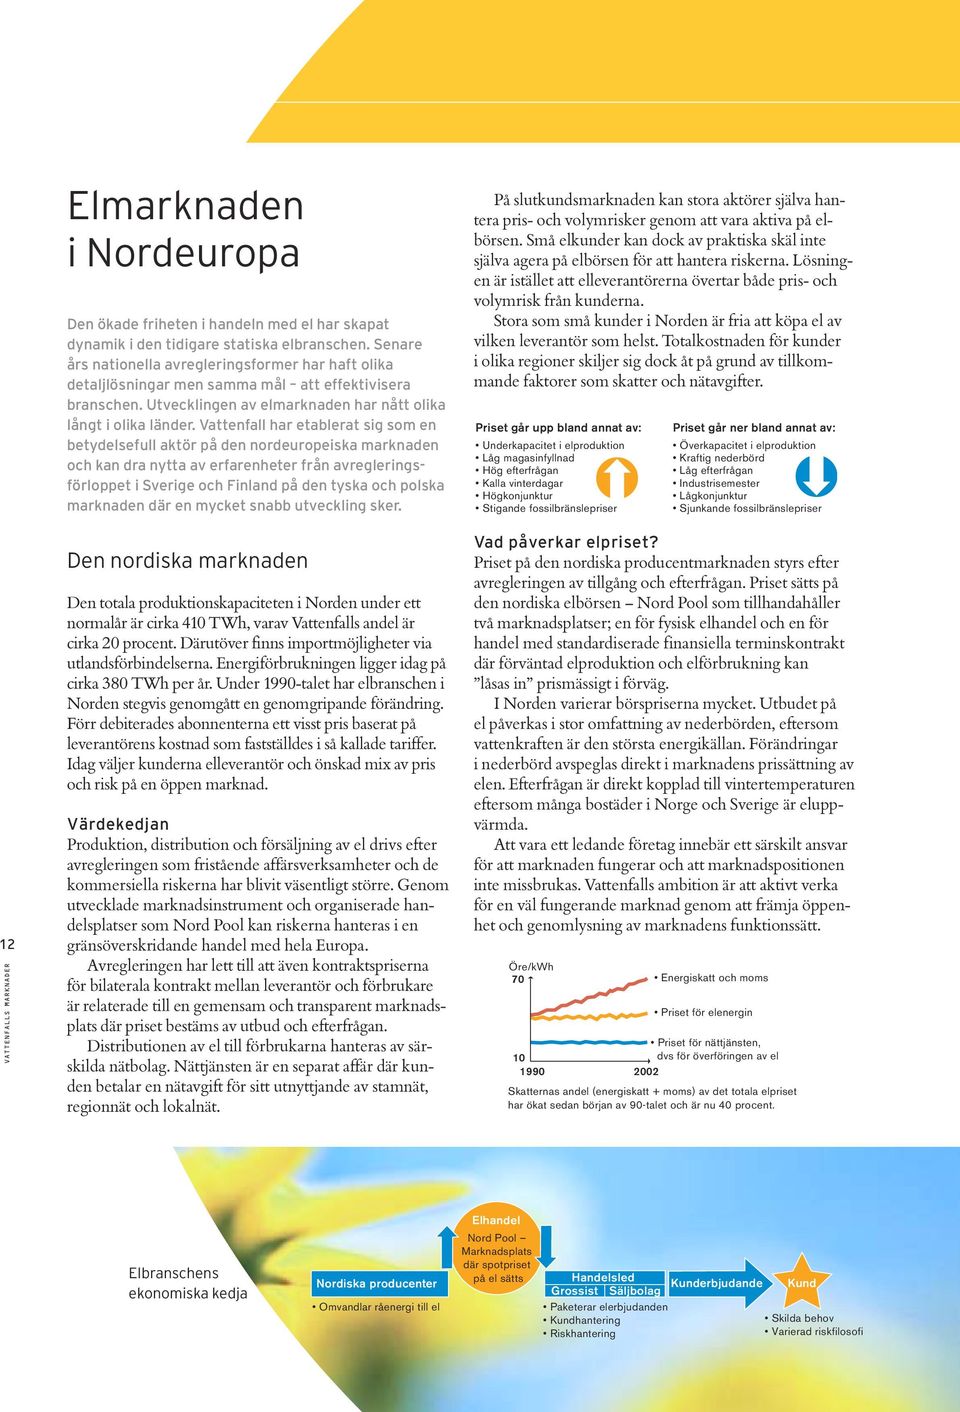 Vattenfall har etablerat sig som en betydelsefull aktör på den nordeuropeiska marknaden och kan dra nytta av erfarenheter från avregleringsförloppet i Sverige och Finland på den tyska och polska